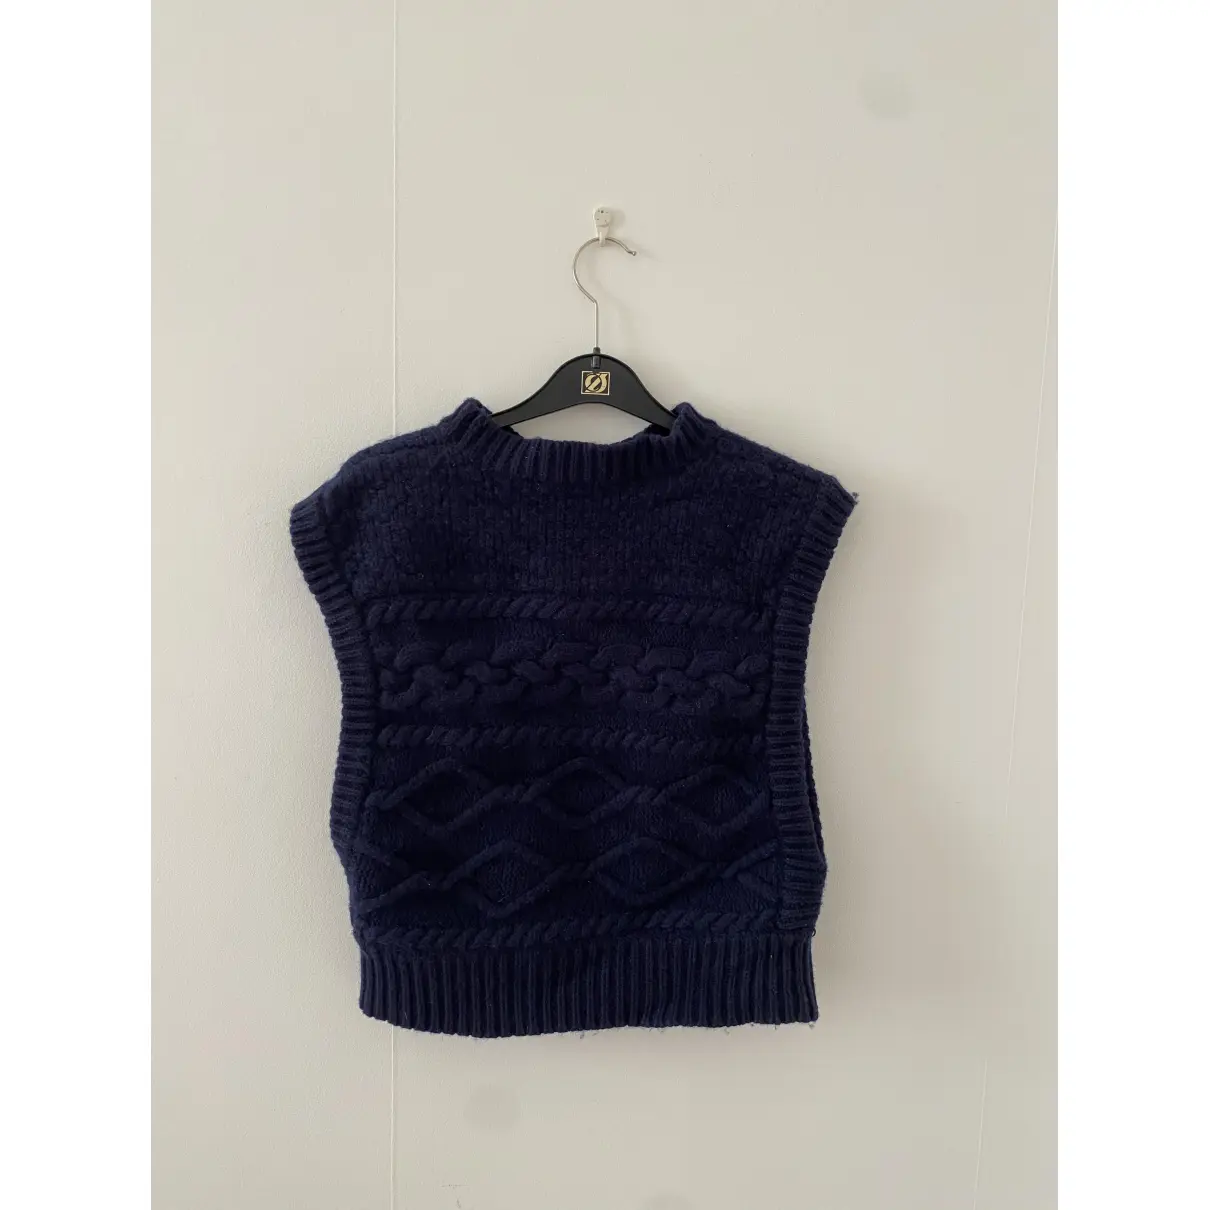 Buy Gestuz Wool knitwear online